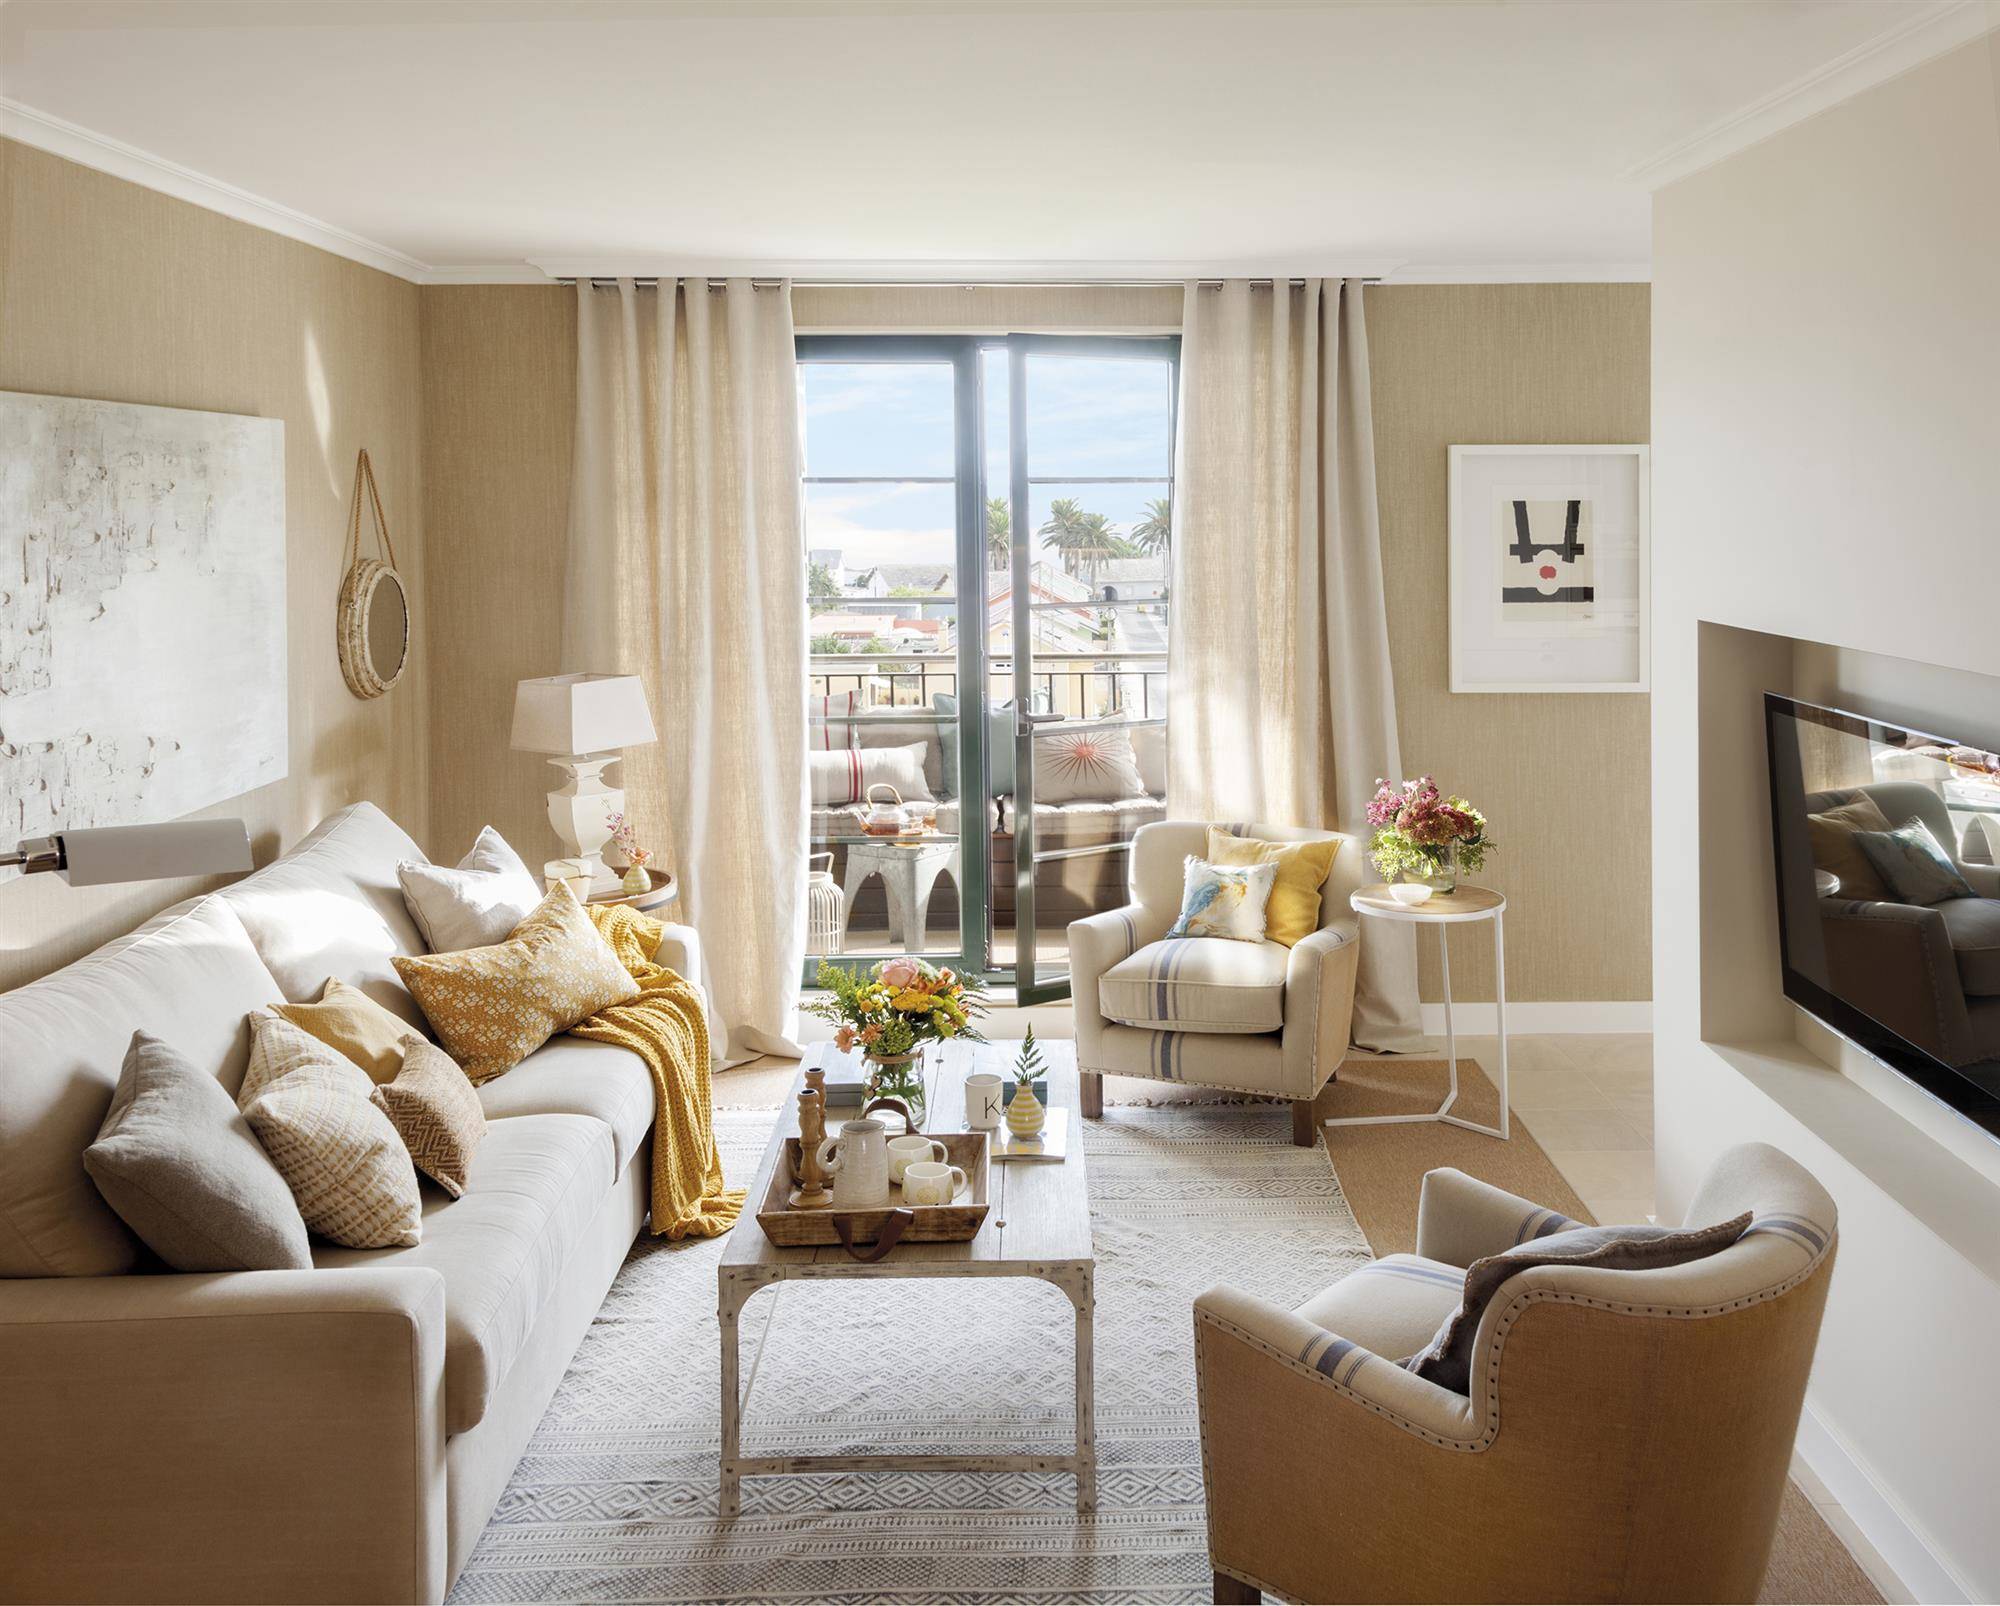 Salón con acceso a terraza decorado en tonos beige con detalles mostaza